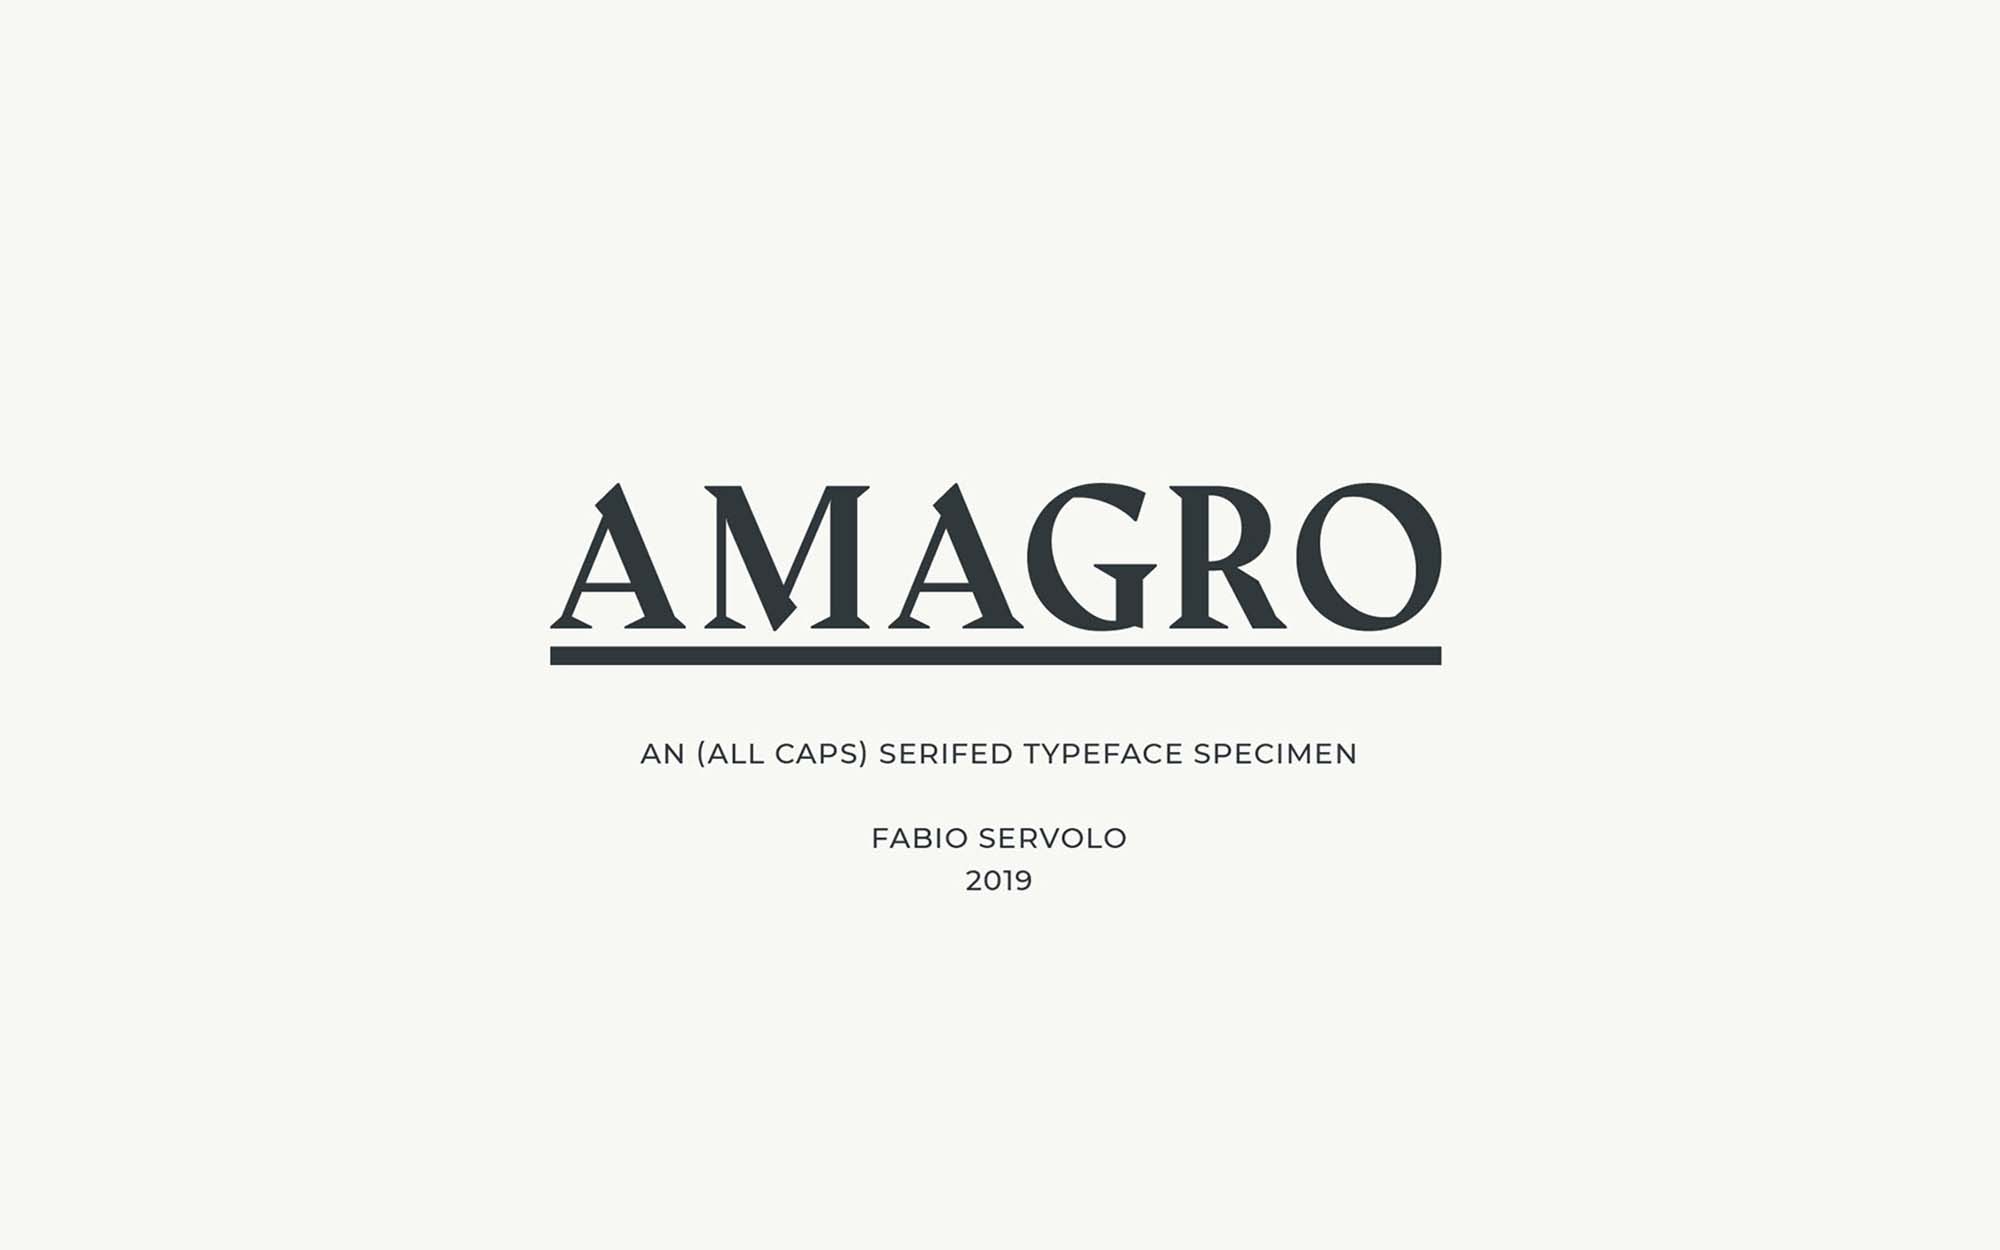 Unique Amagro Typeface